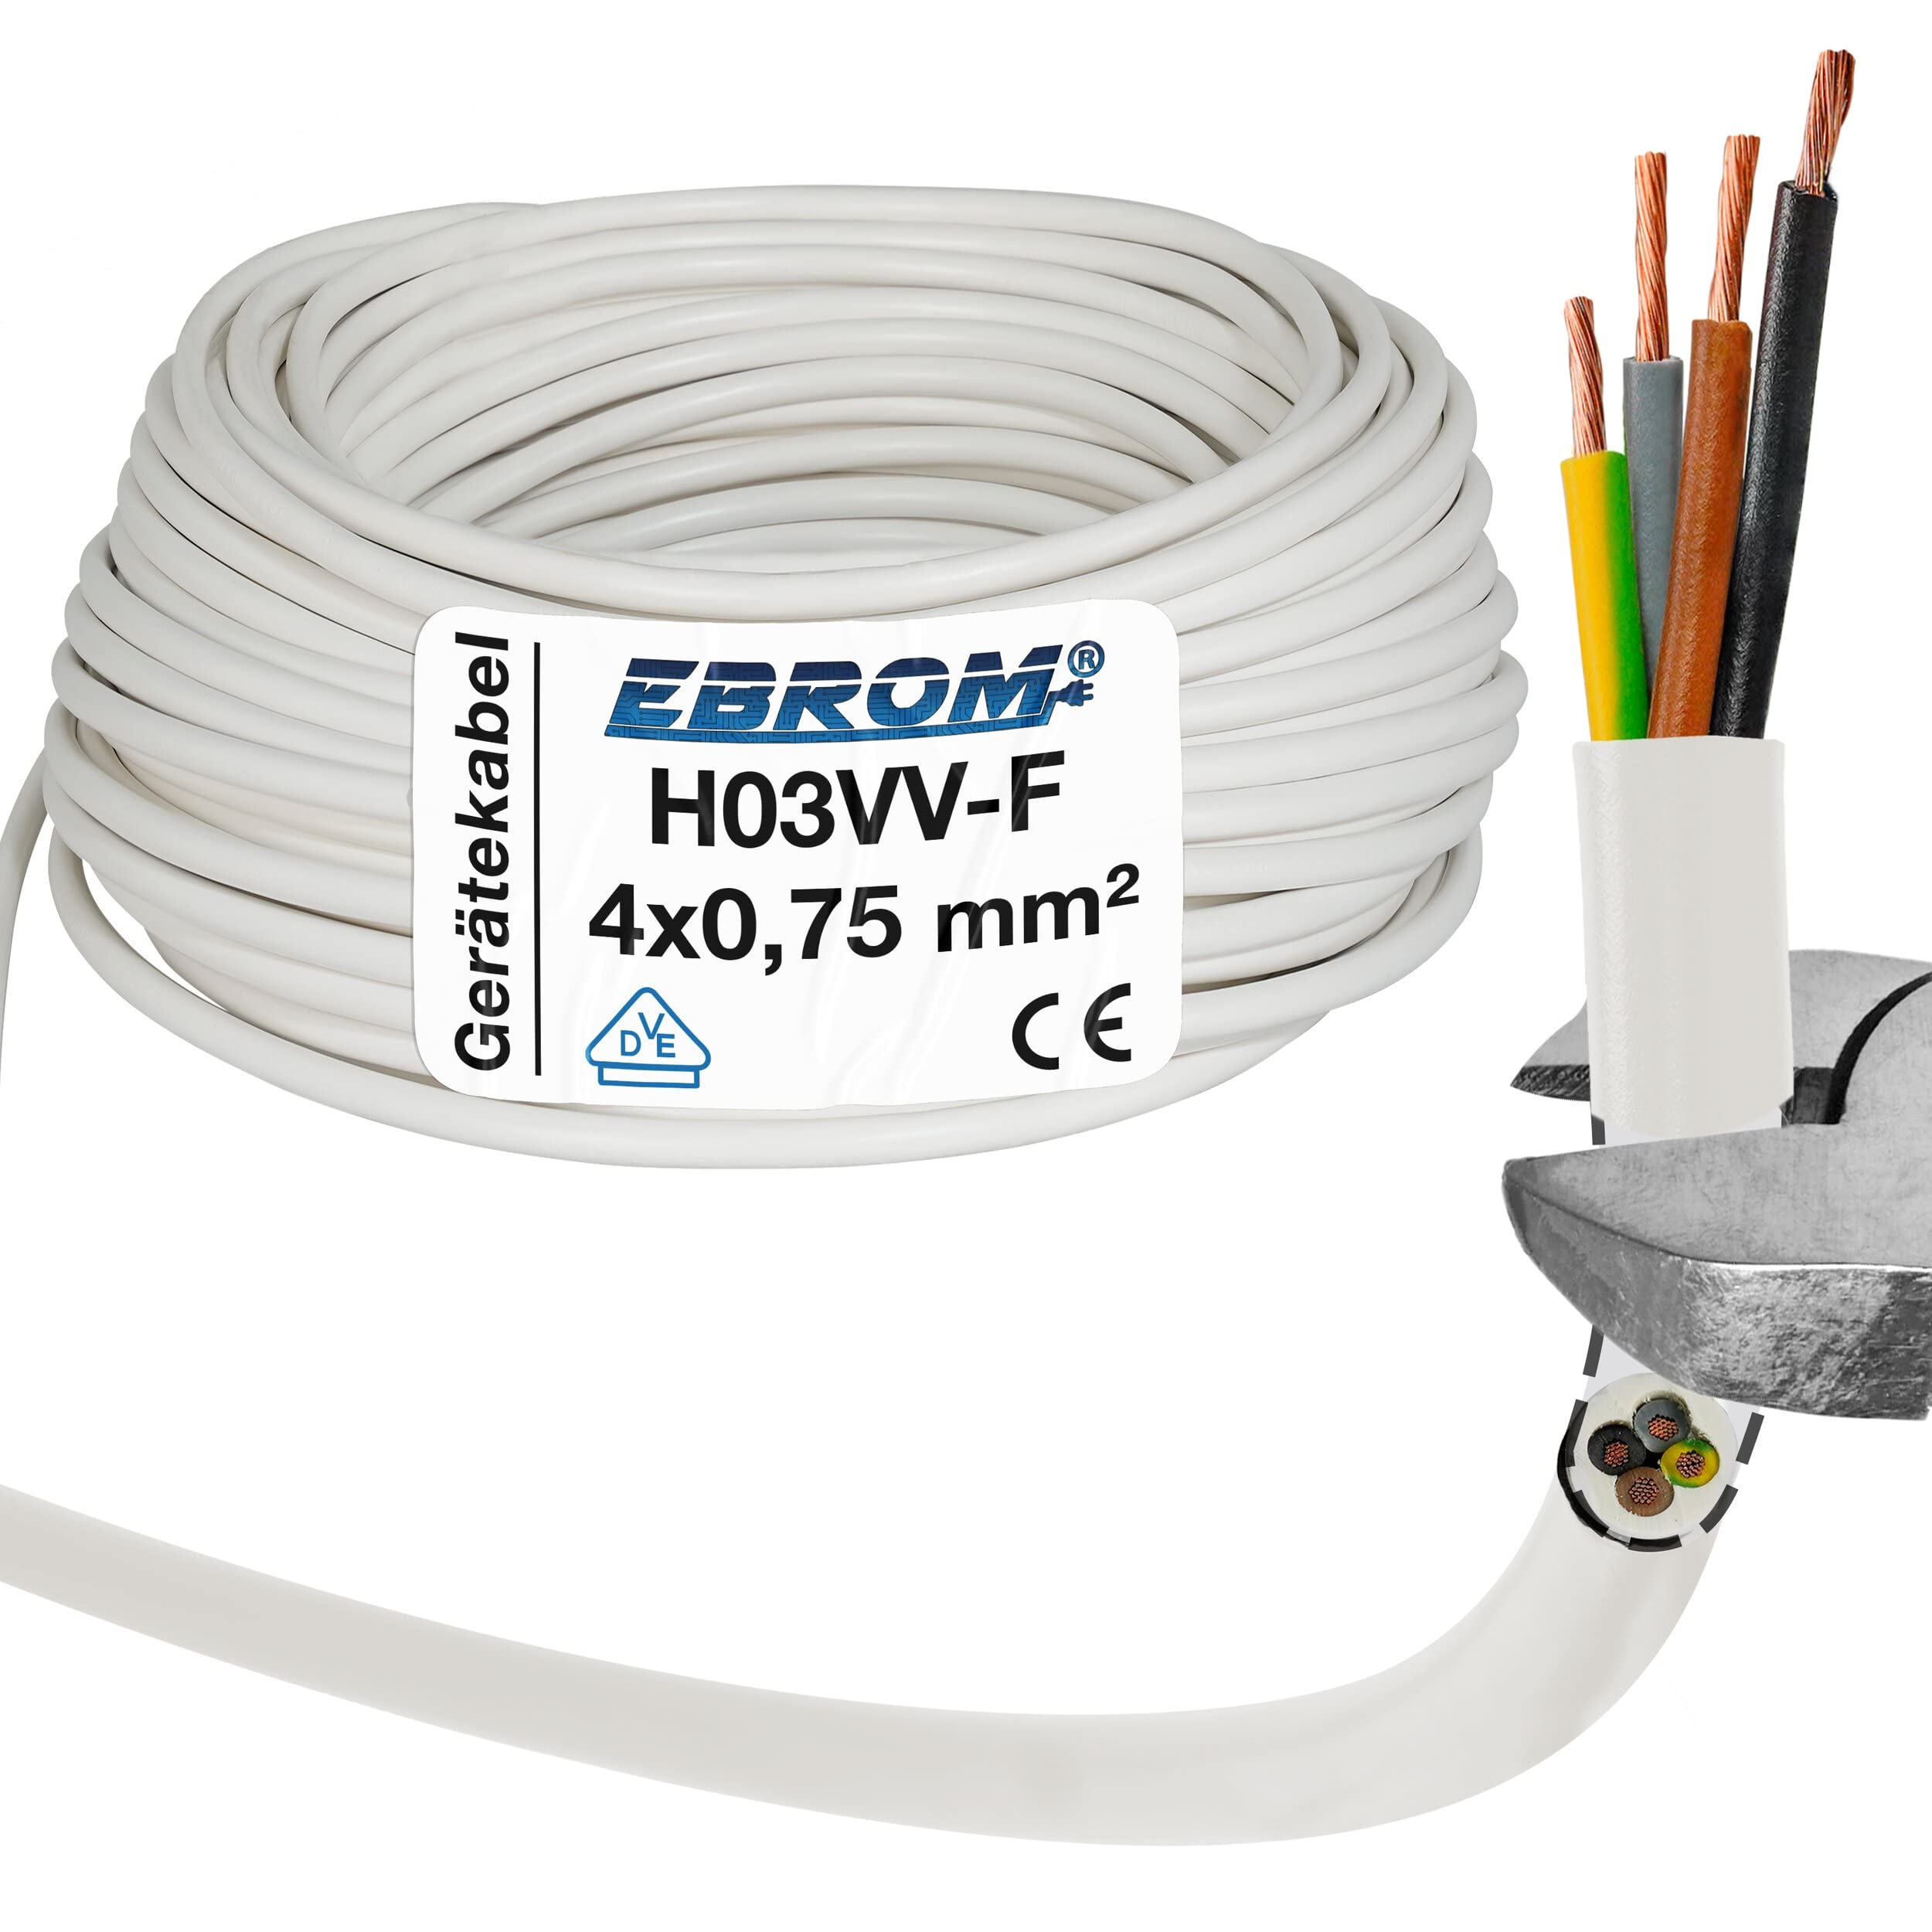 EBROM Kunststoff Schlauchleitung RUND, LED Kabel, Stromkabel, Leitung, Gerätekabel H03VV-F 4x0,75 mm² Farbe: weiß, viele Längen in 5 m Schritten bis 250 Meter 4G0,75 mm2, Ihre Kabellänge: 60 Meter